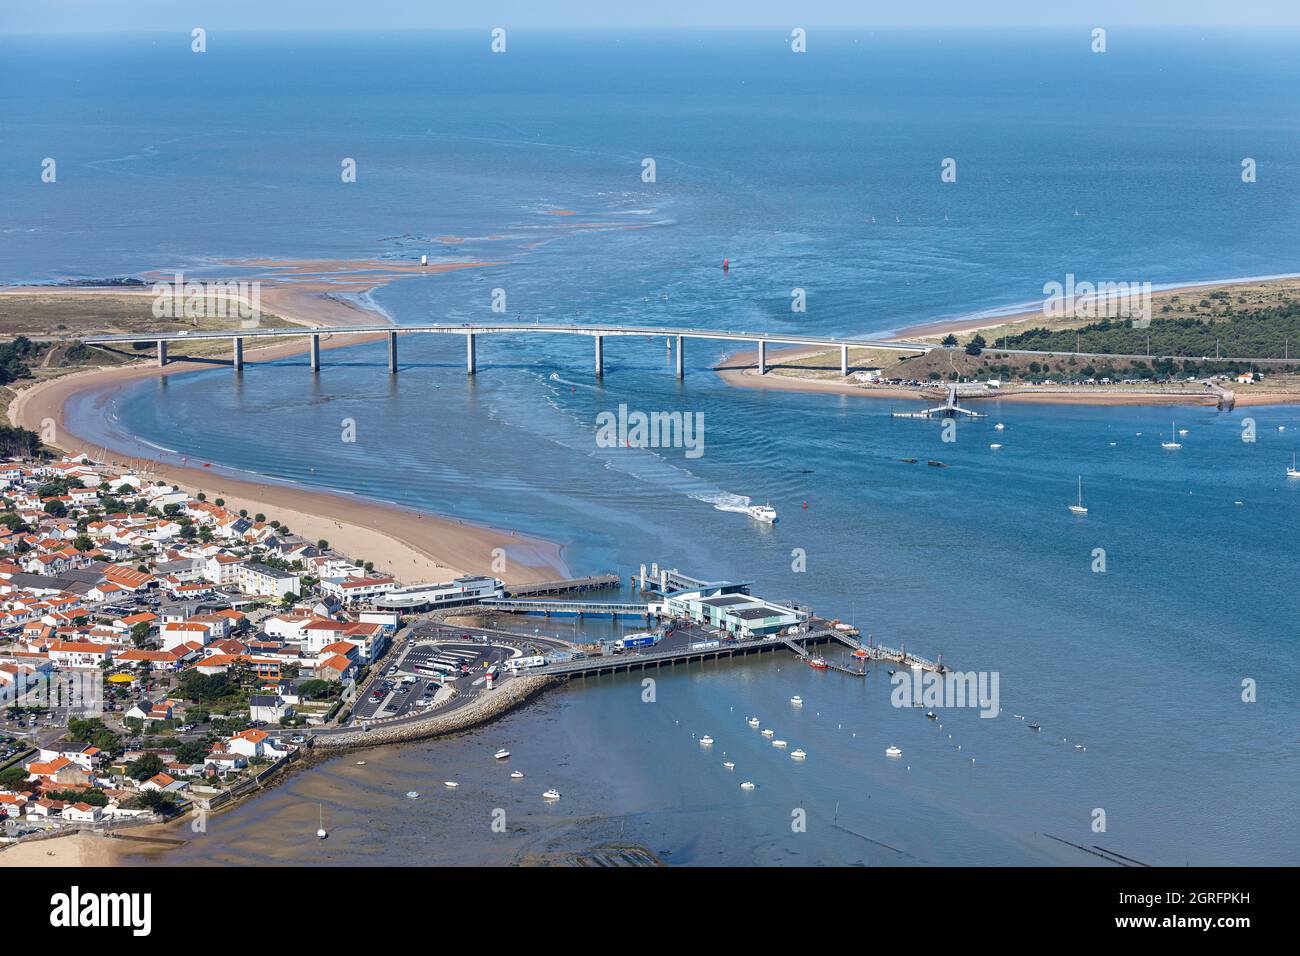 France, Vendee, La Barre de Monts, the marine terminal and Noirmoutier bridge (aerial view) Stock Photo